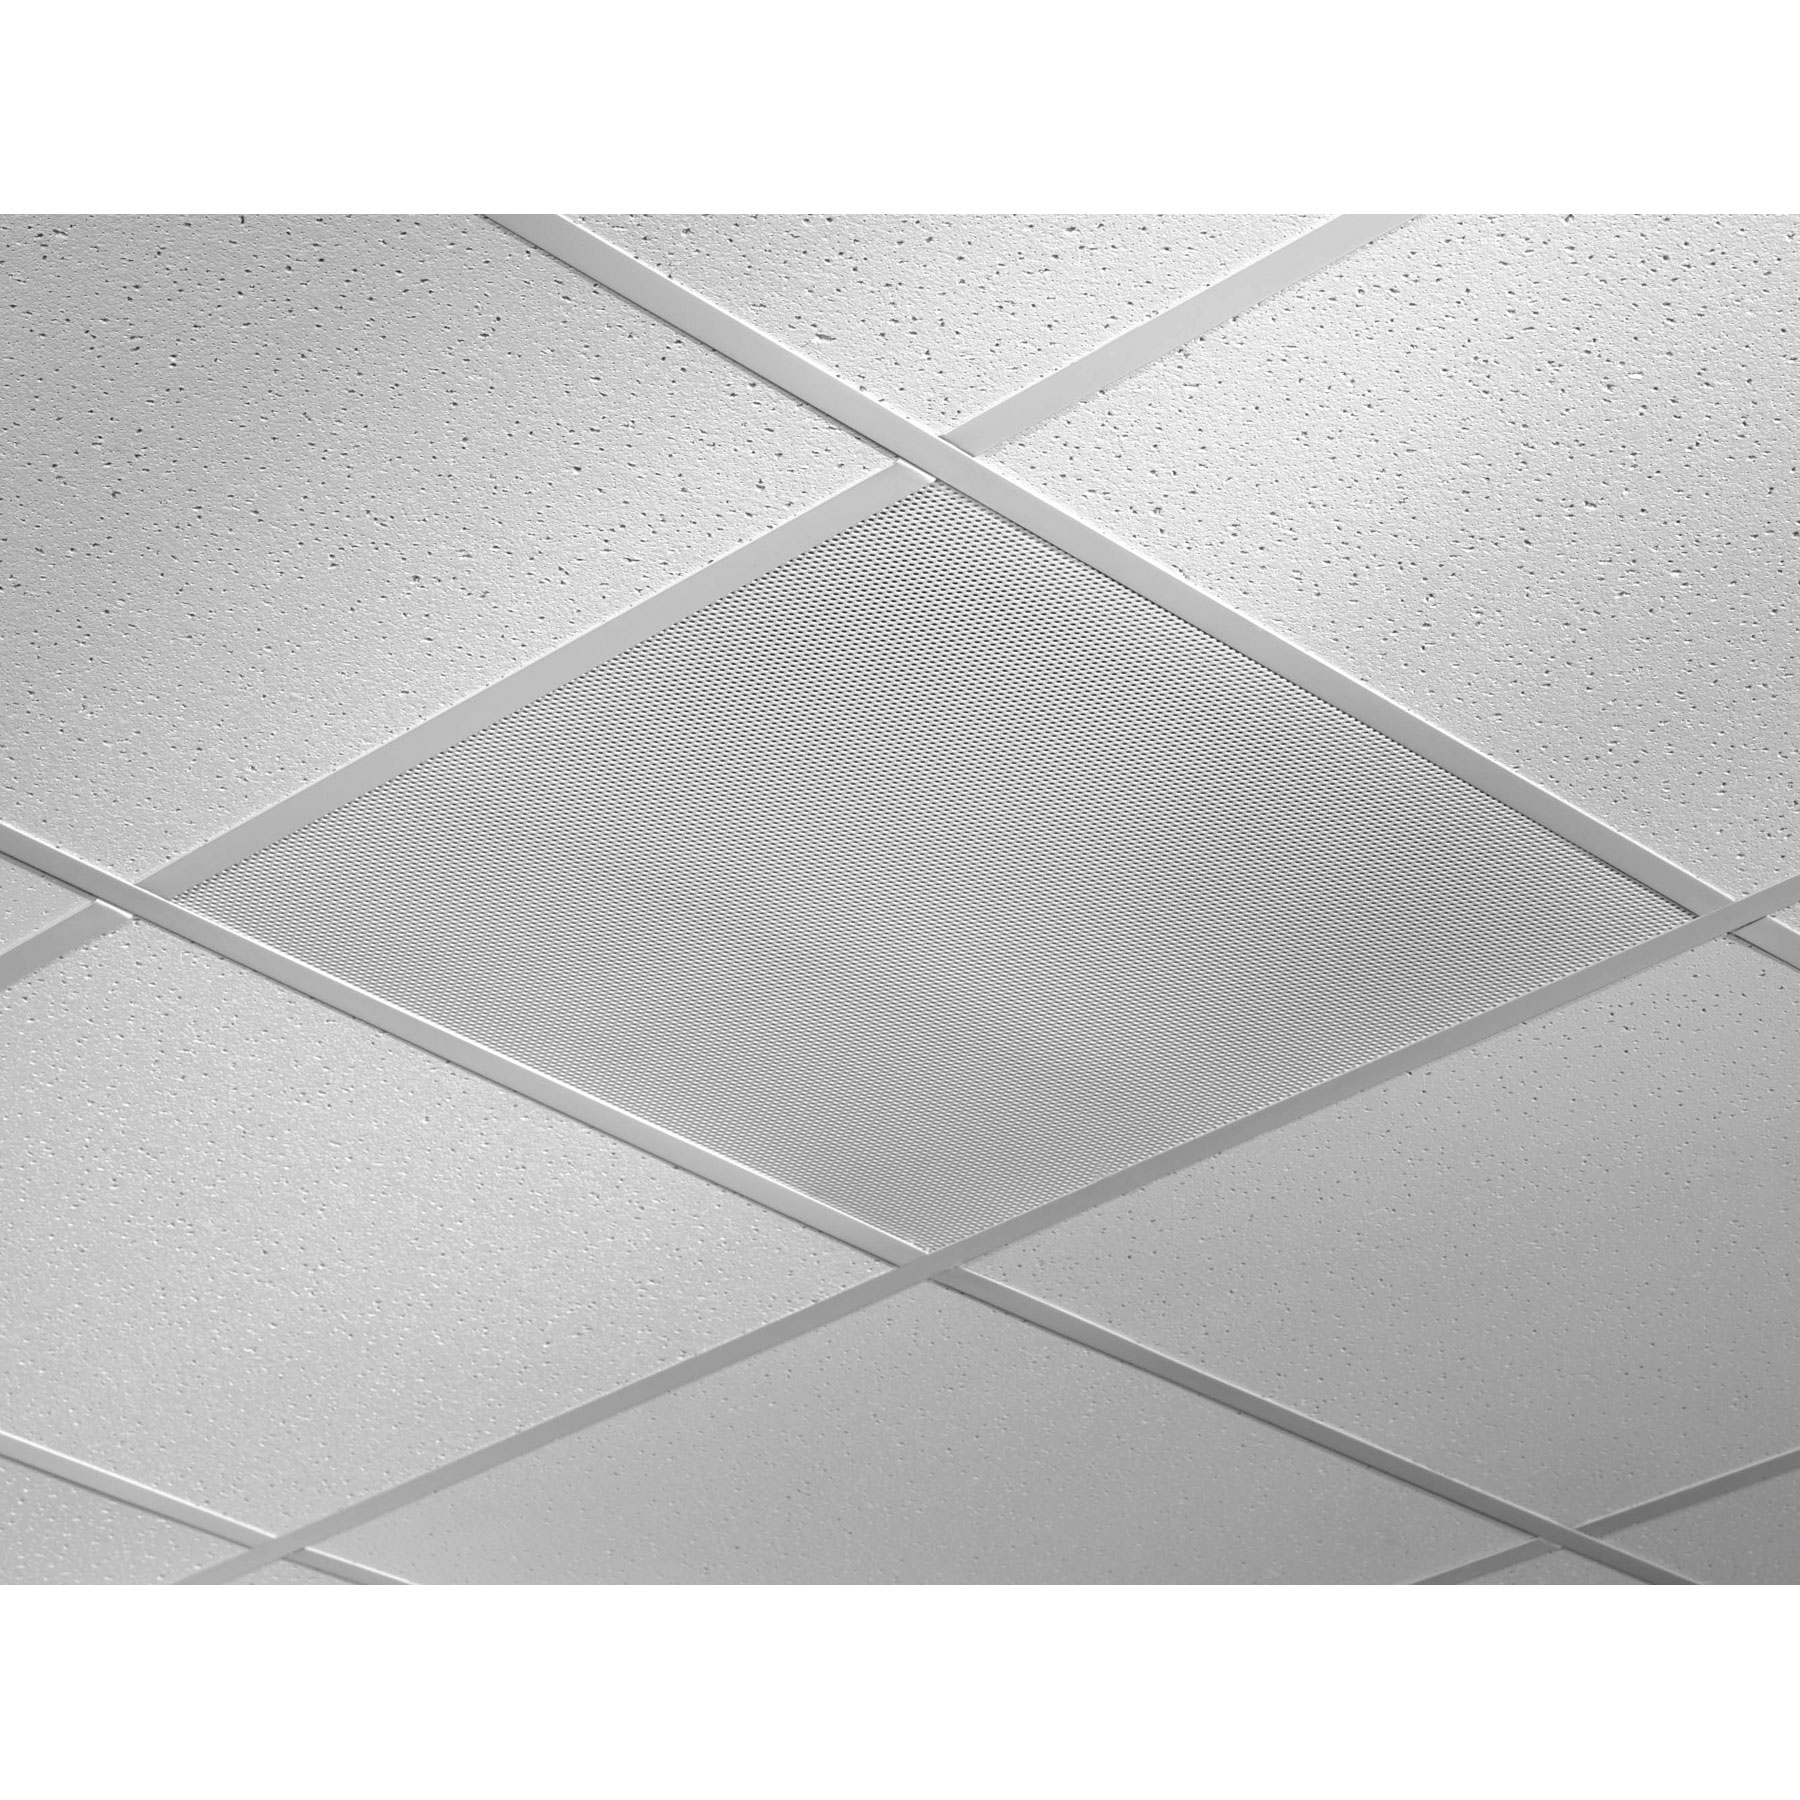 2x2 Ceiling Tile Speakers 2×2 Ceiling Tile Speakers quam system 12 24 x 24 lay in ceiling tile speaker 5w 2570v 1800 X 1800